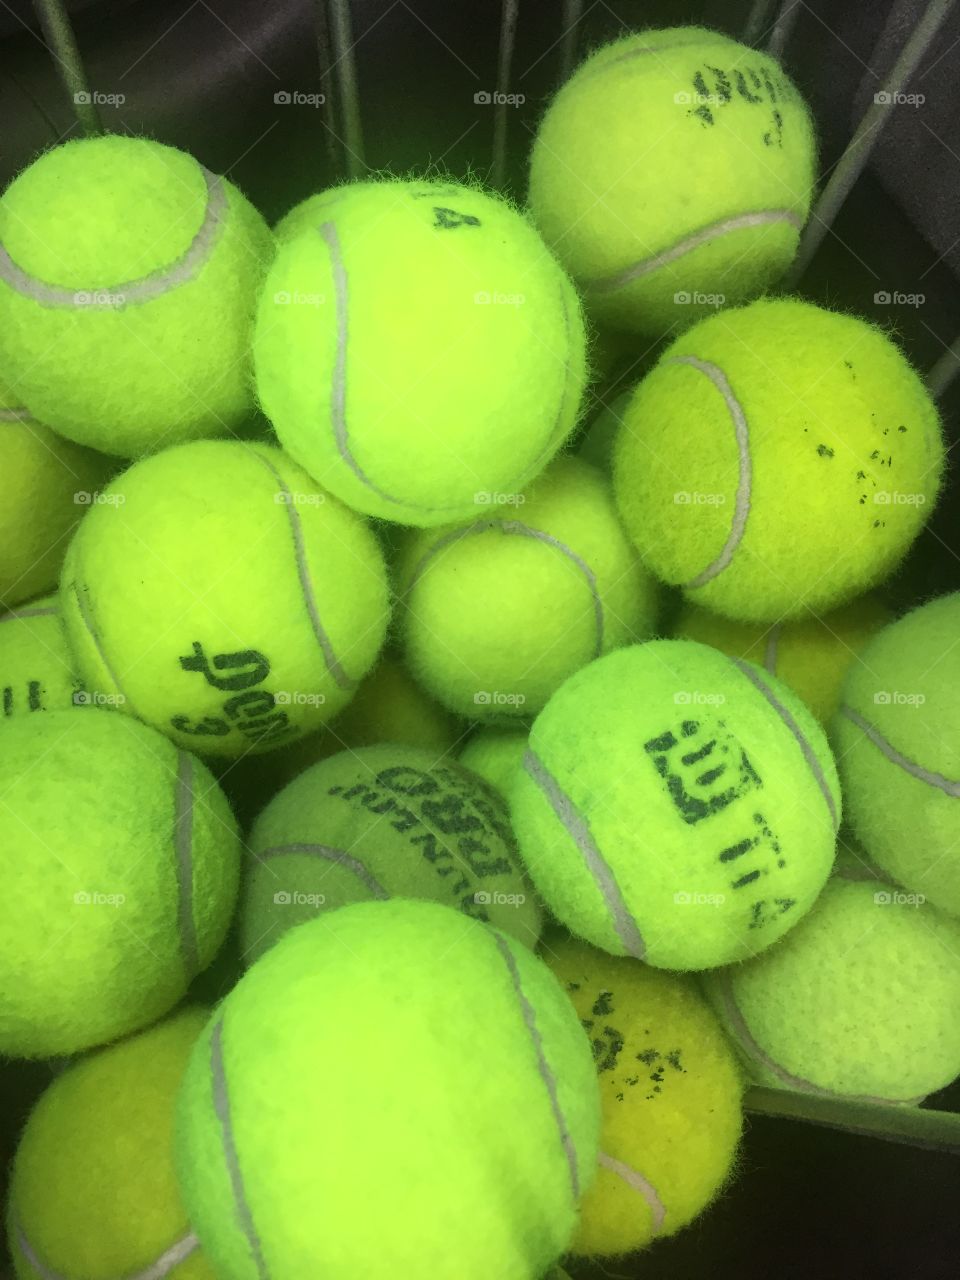 Tennis balls 🎾